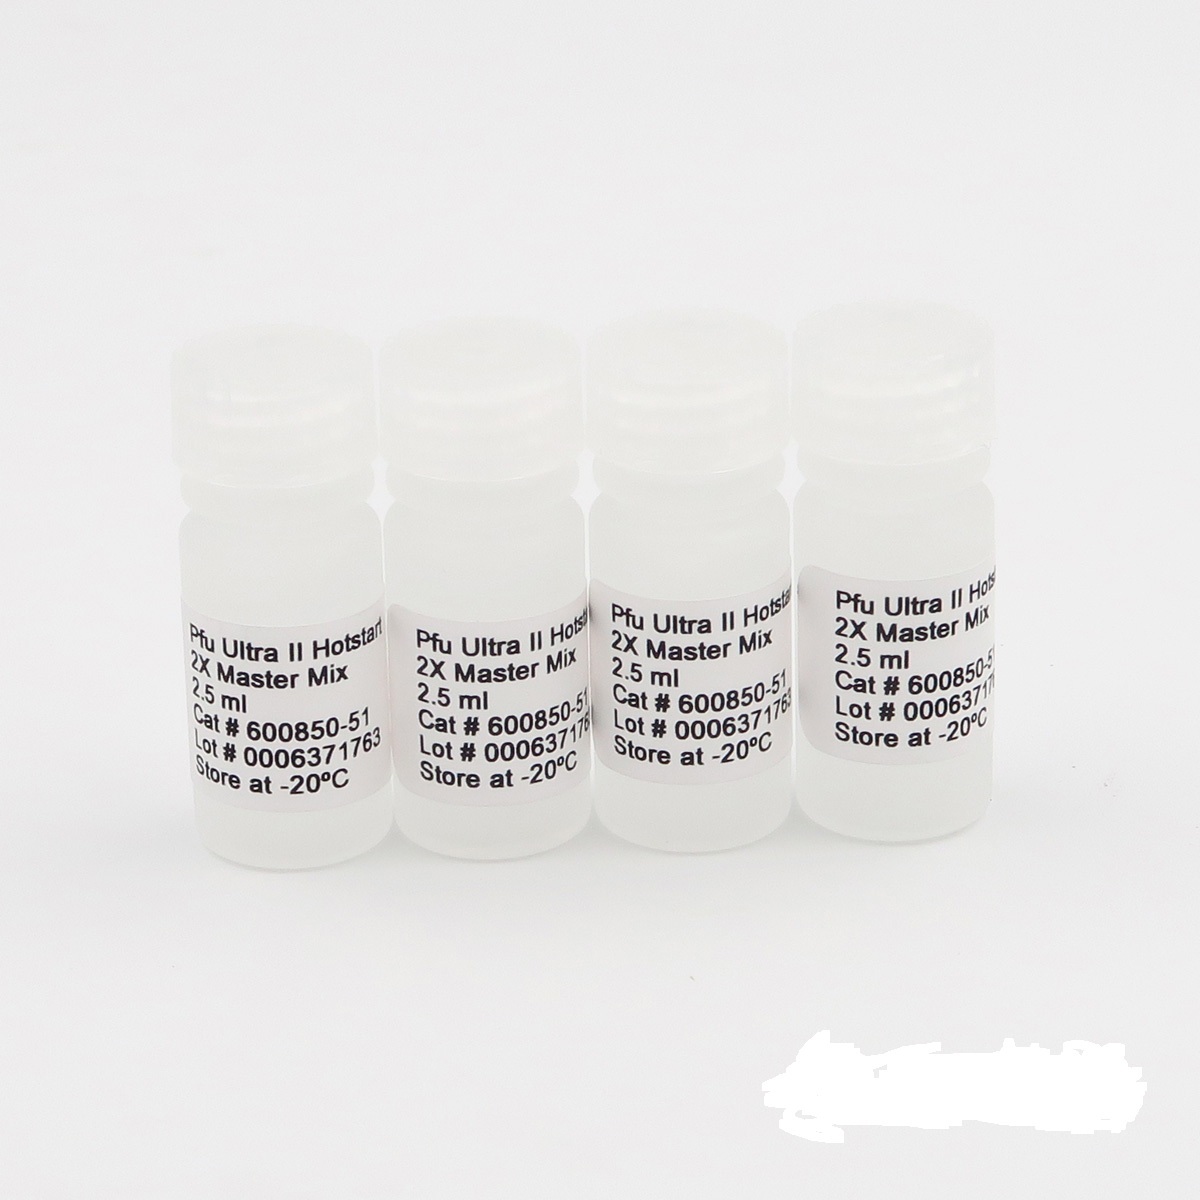 耐久肠球菌染料法荧光定量PCR试剂盒